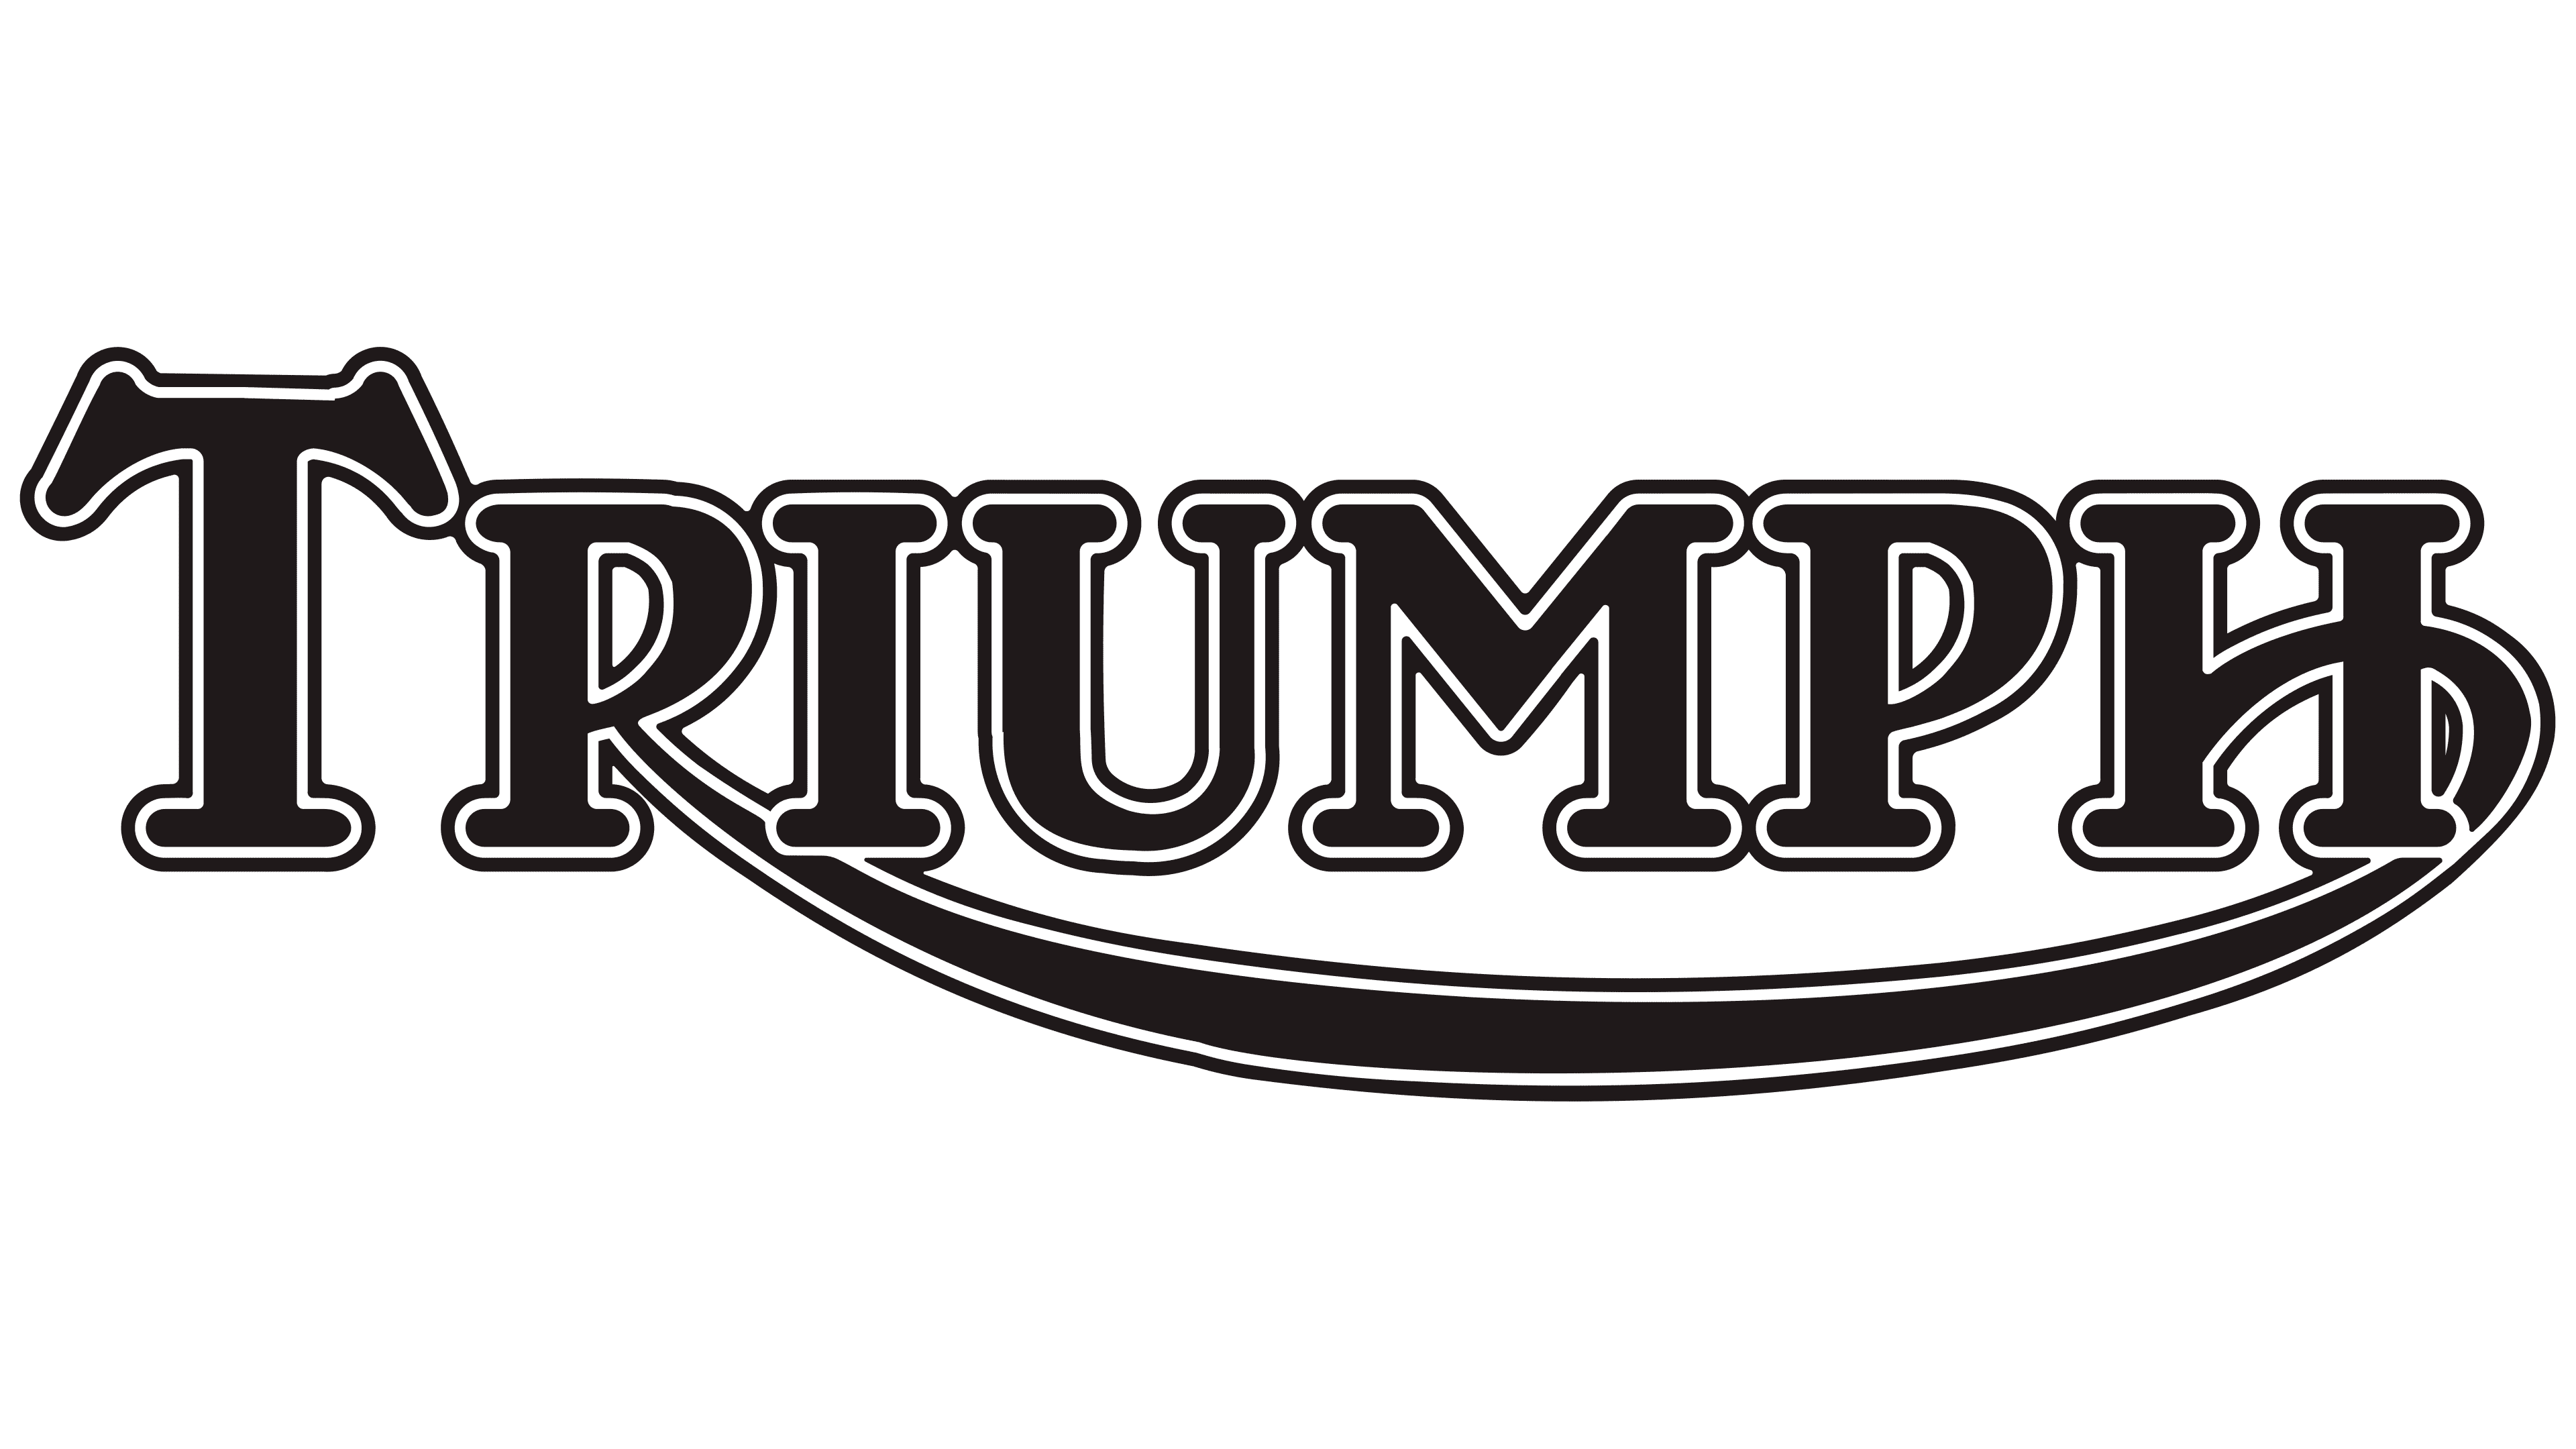 Triumph Studios logo png